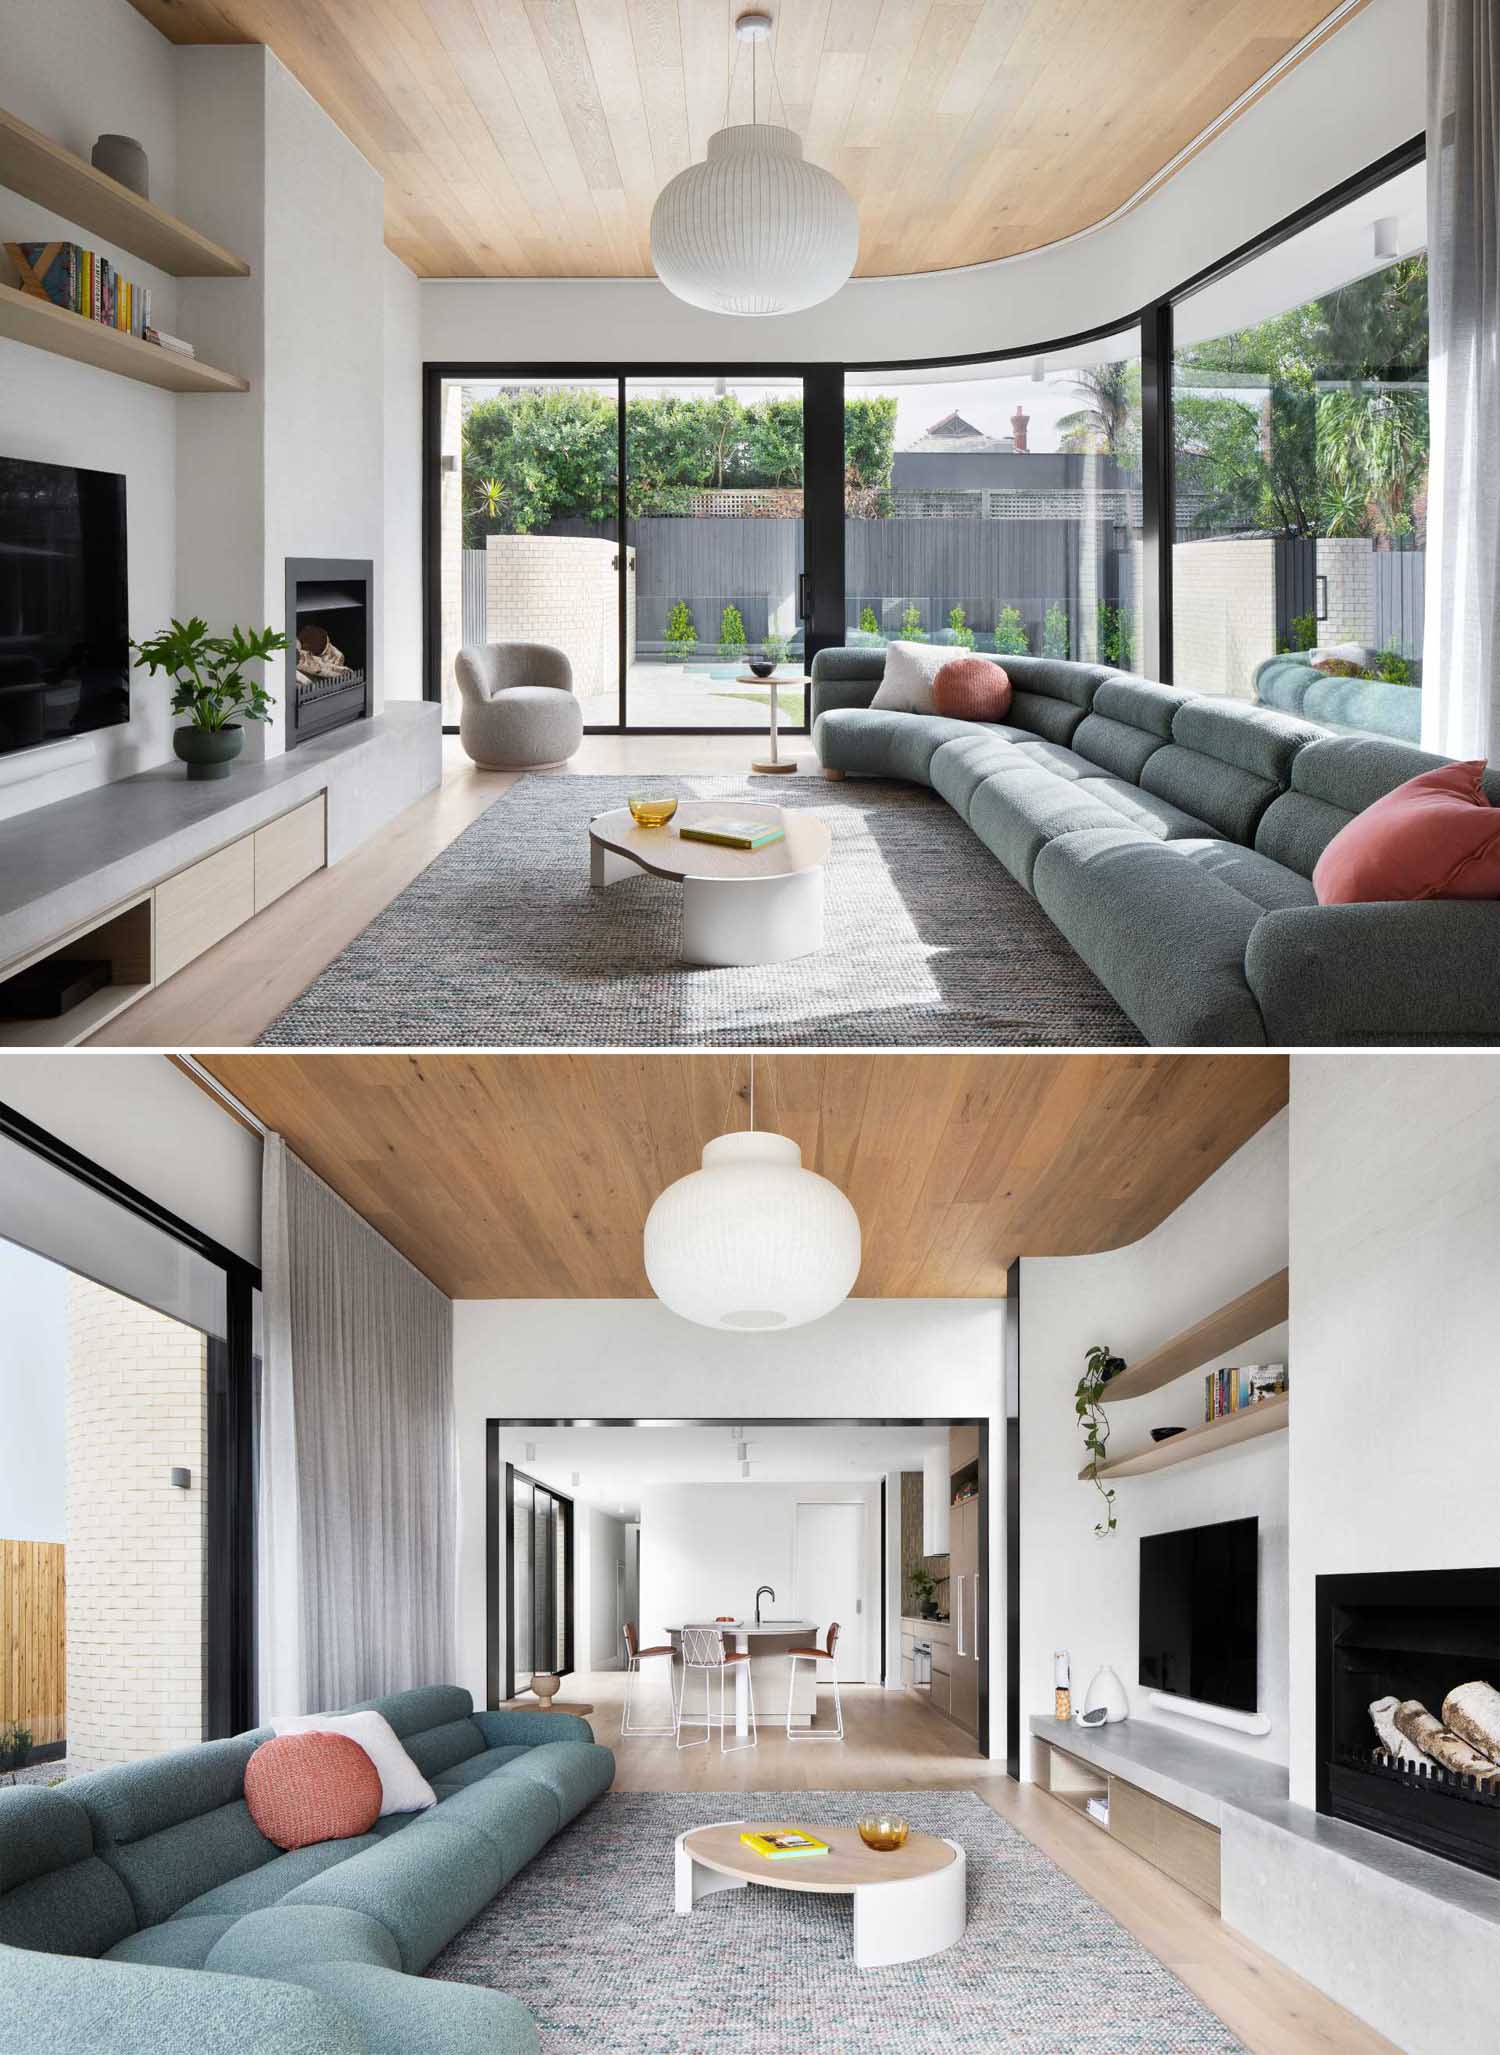 یک اتاق نشیمن مدرن با دیوار منحنی، سقف چوبی، شومینه و یک اجاق که در امتداد دیوار حرکت می کند و شامل یک کابینت ذخیره سازی است.